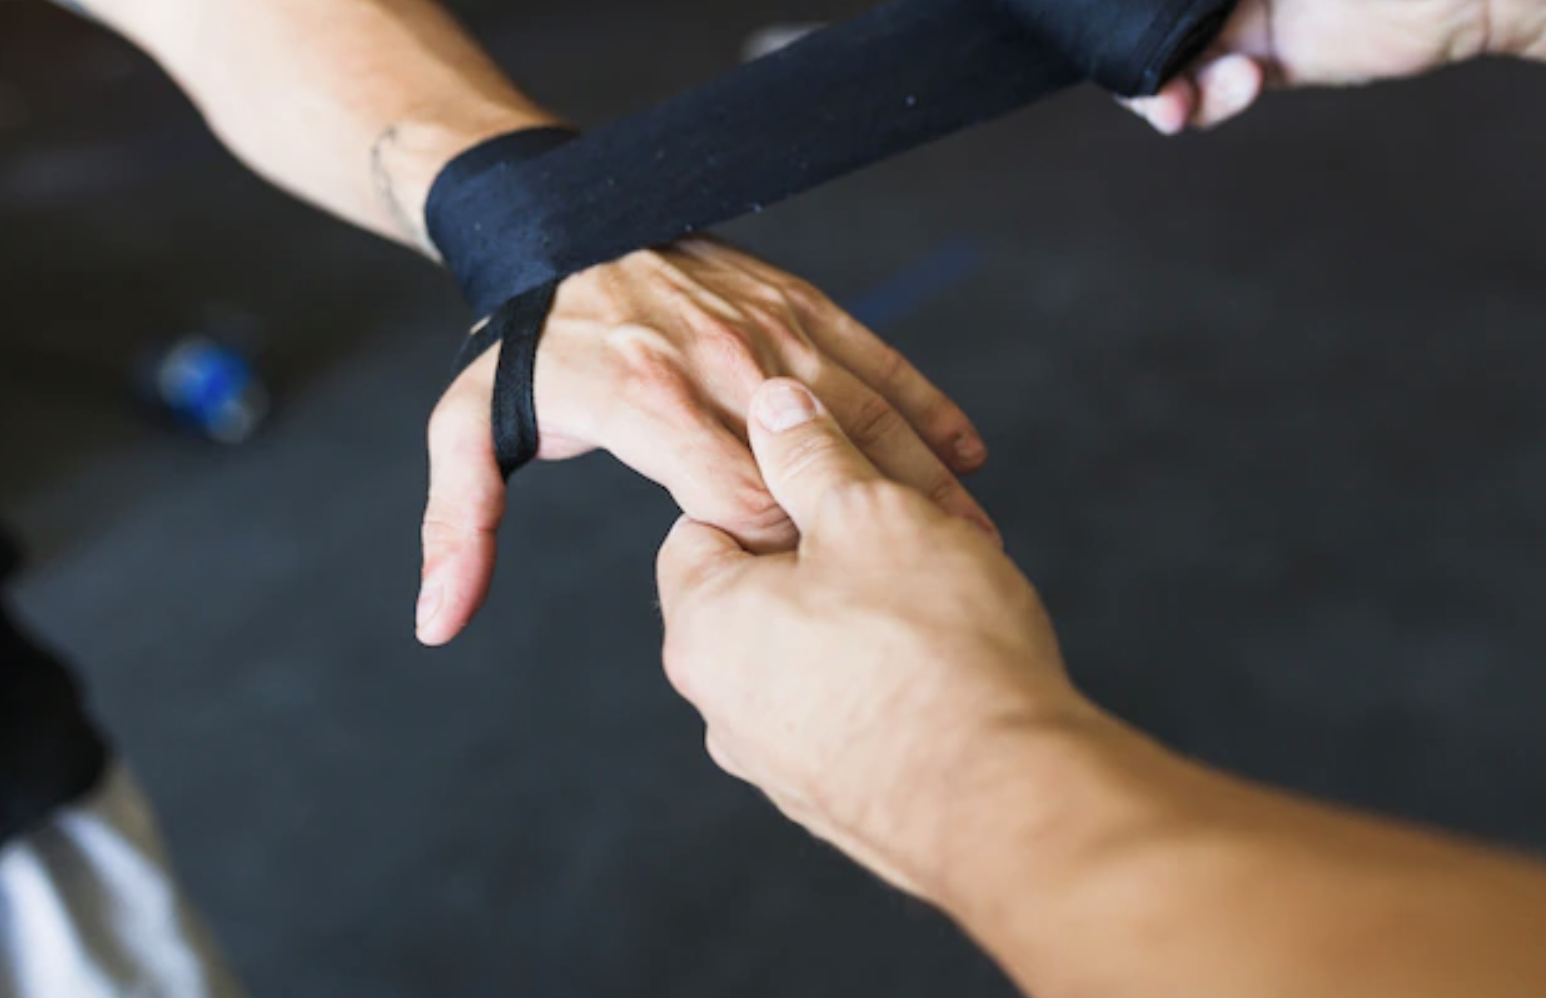 Sehnenverletzungen der Hand - Warum eine gezielte Physiotherapie entscheidend ist